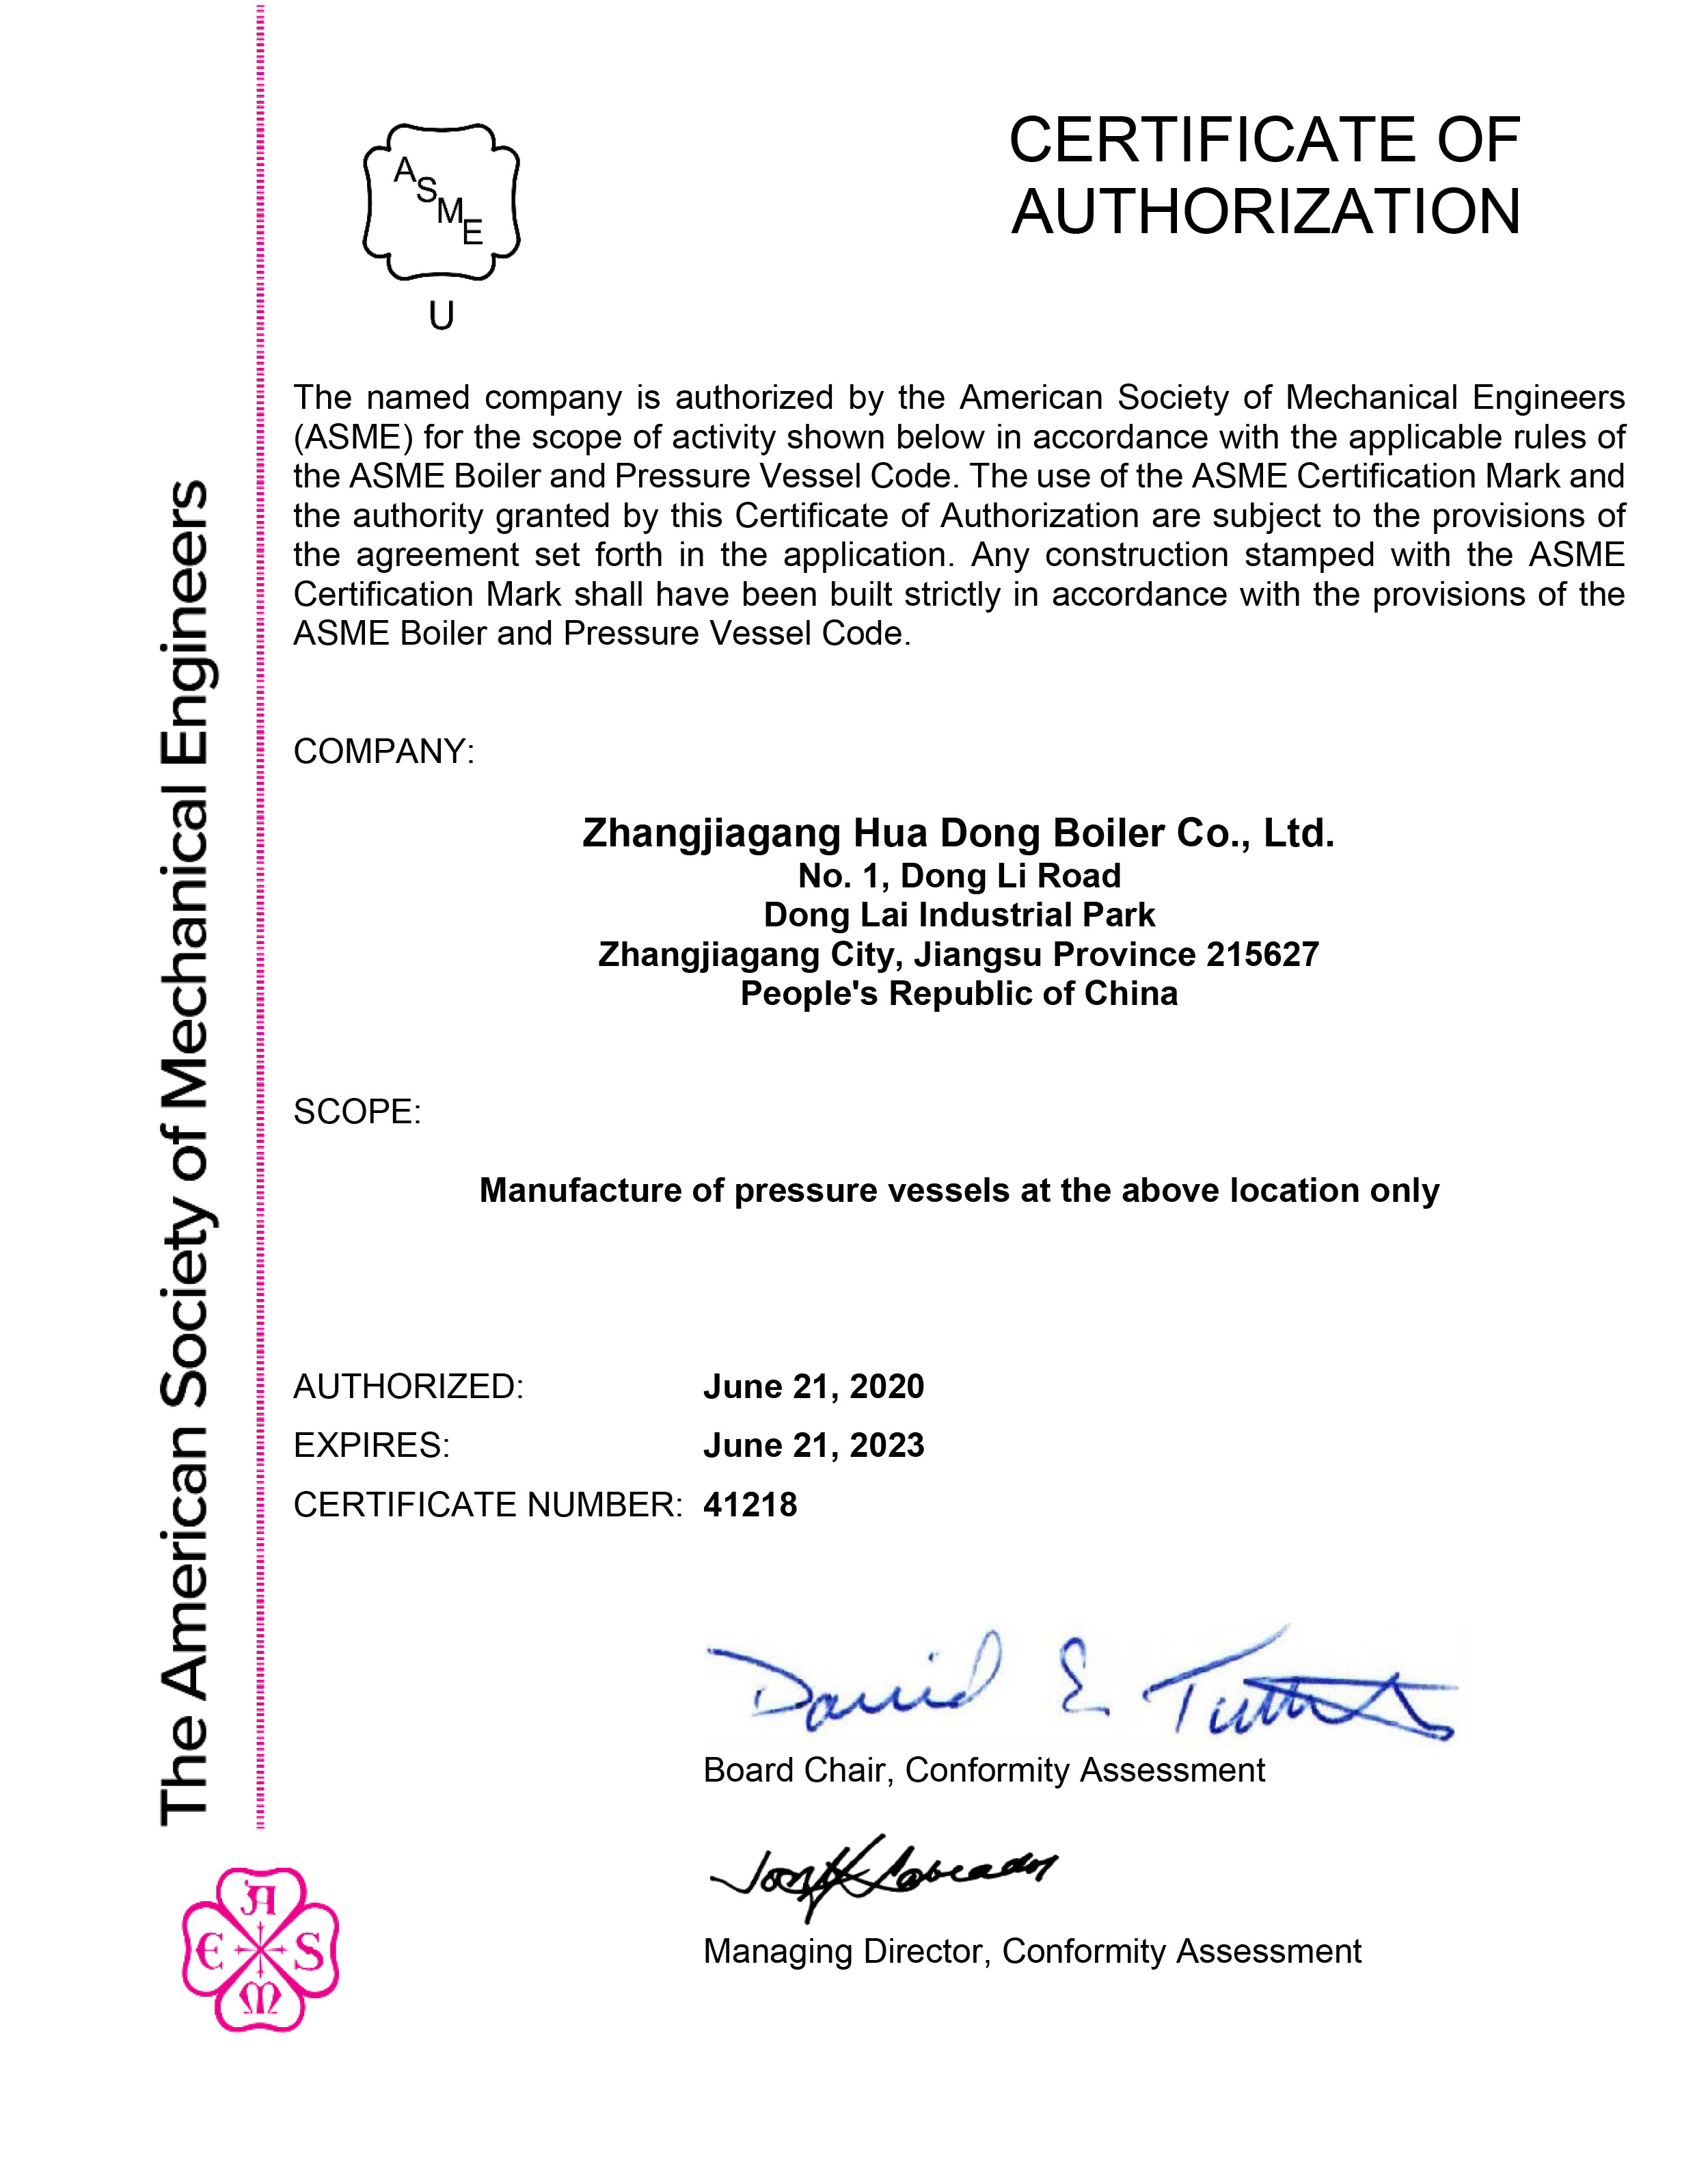 Zhangjiagang HuaDong Boiler Co., Ltd. Certifications